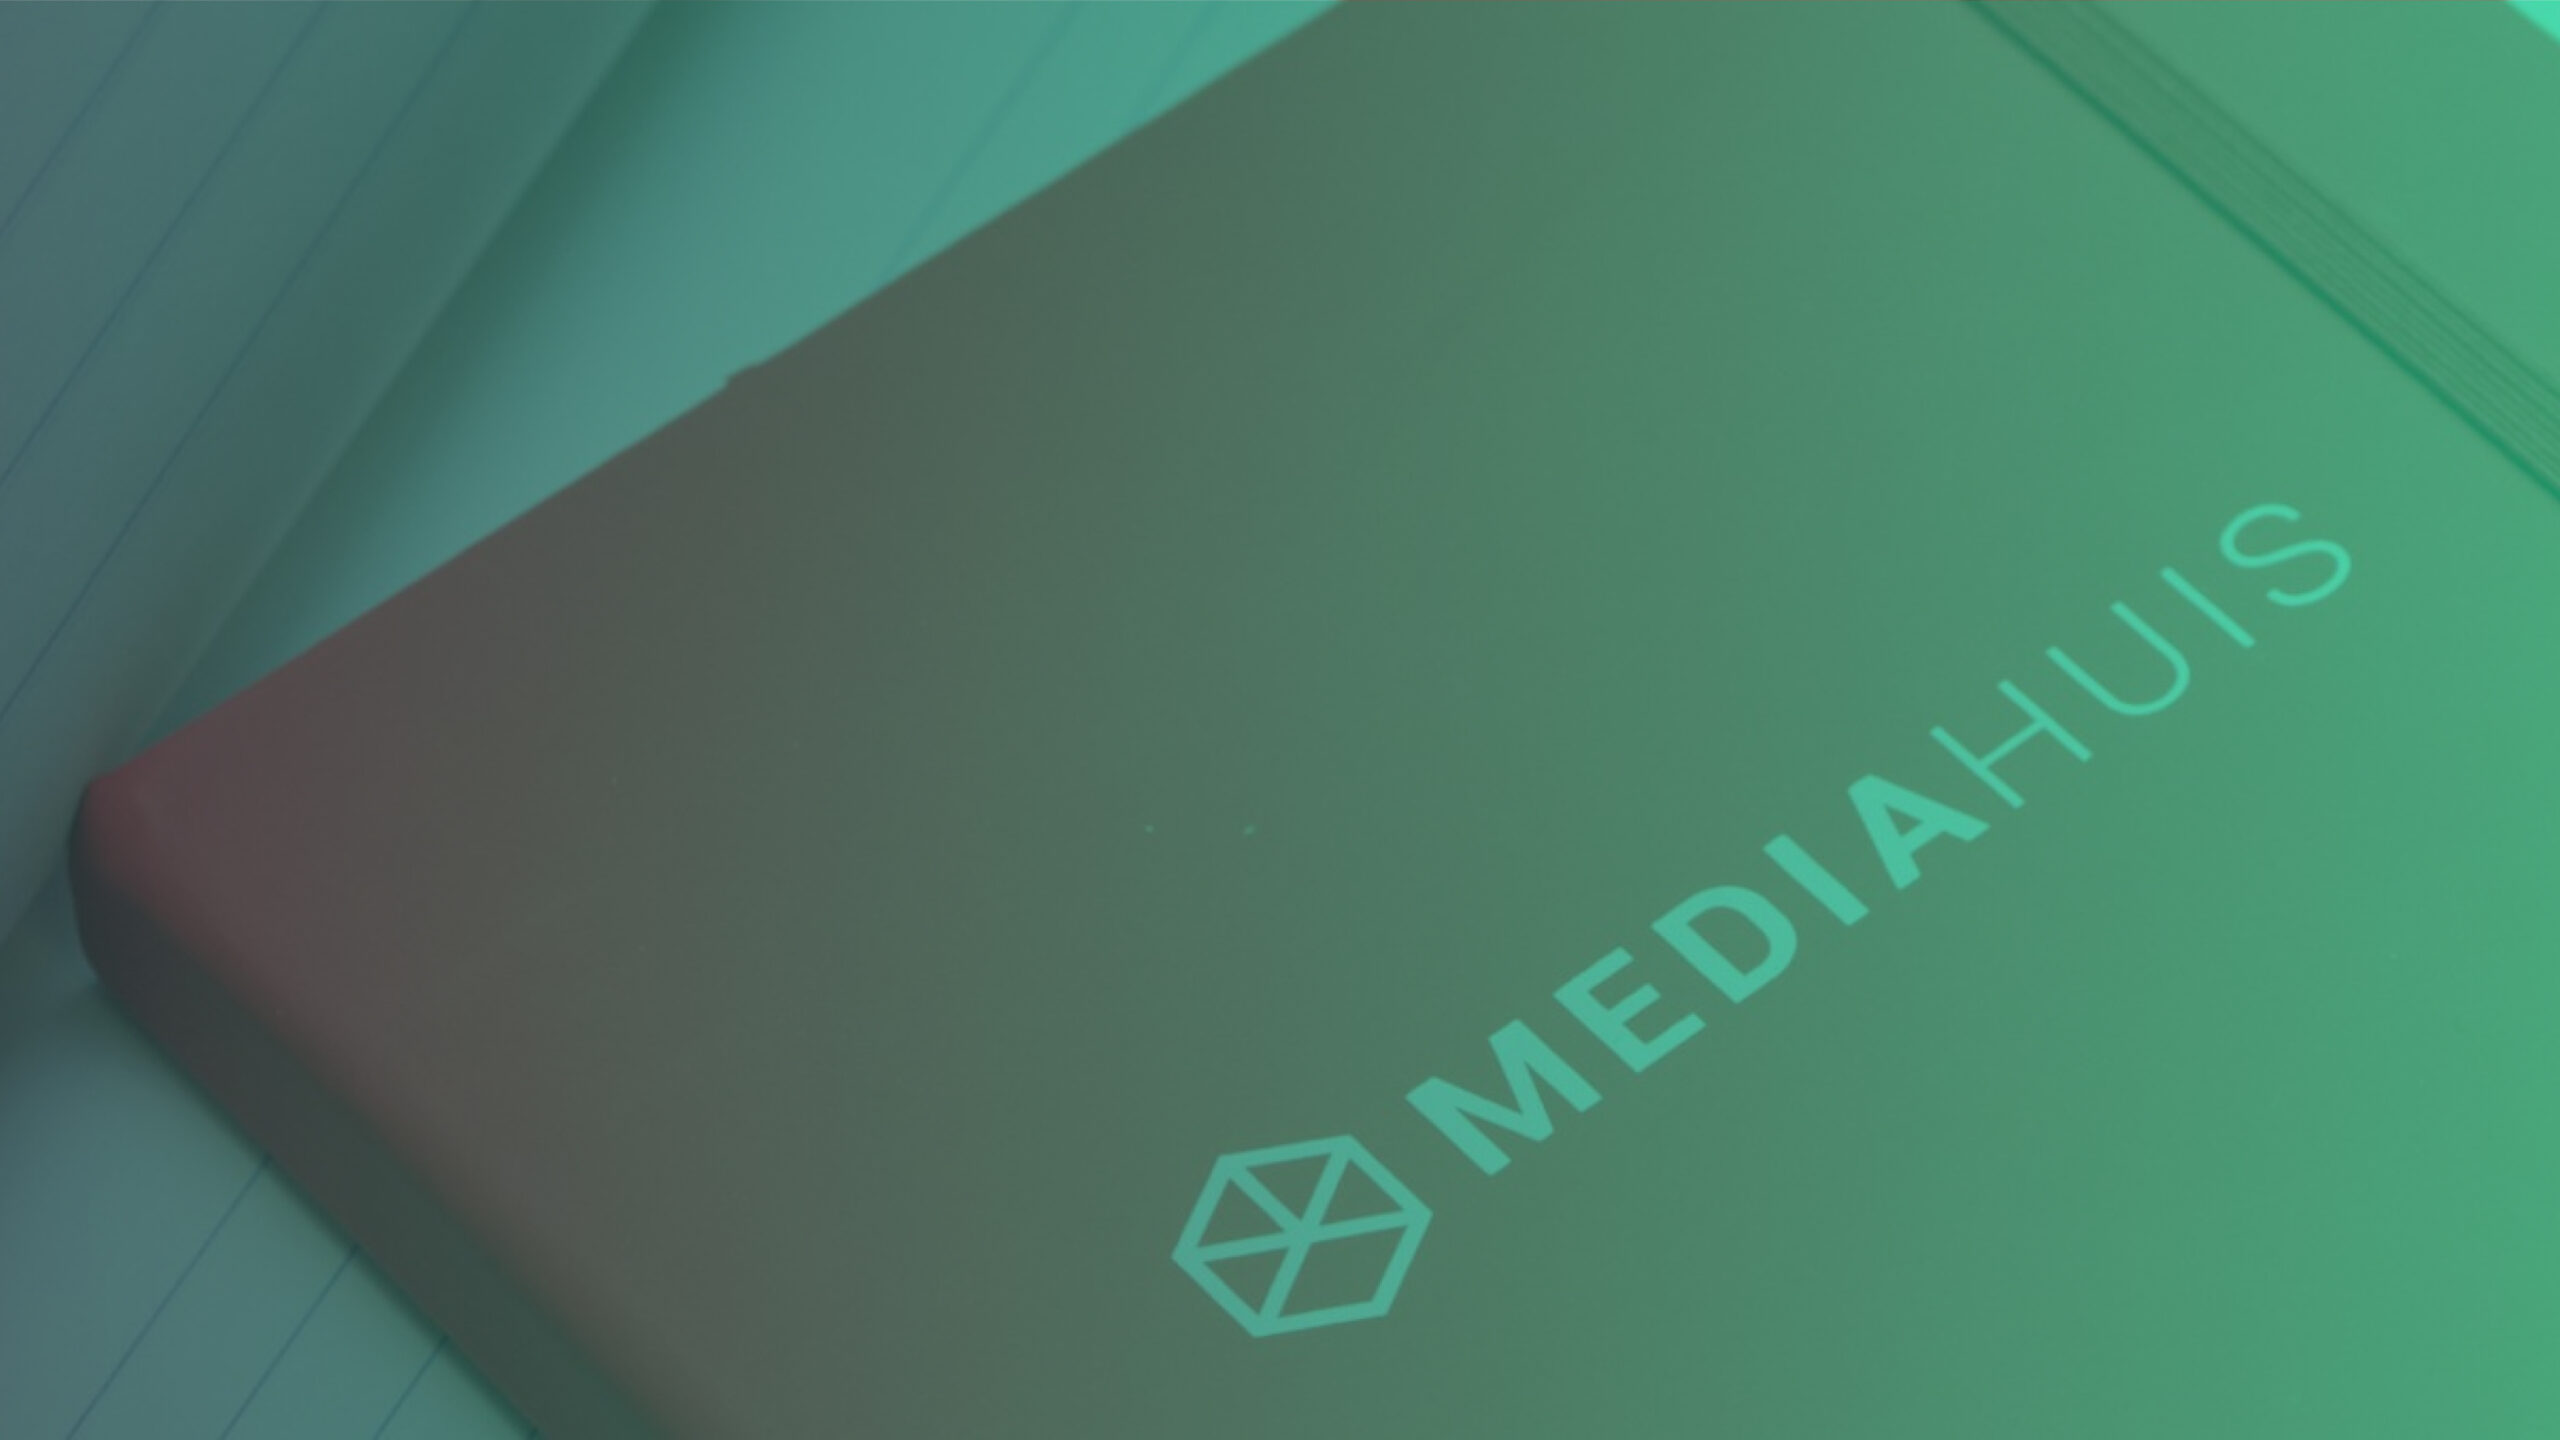 Continu bouwen aan een innovatiever medialandschap met Mediahuis